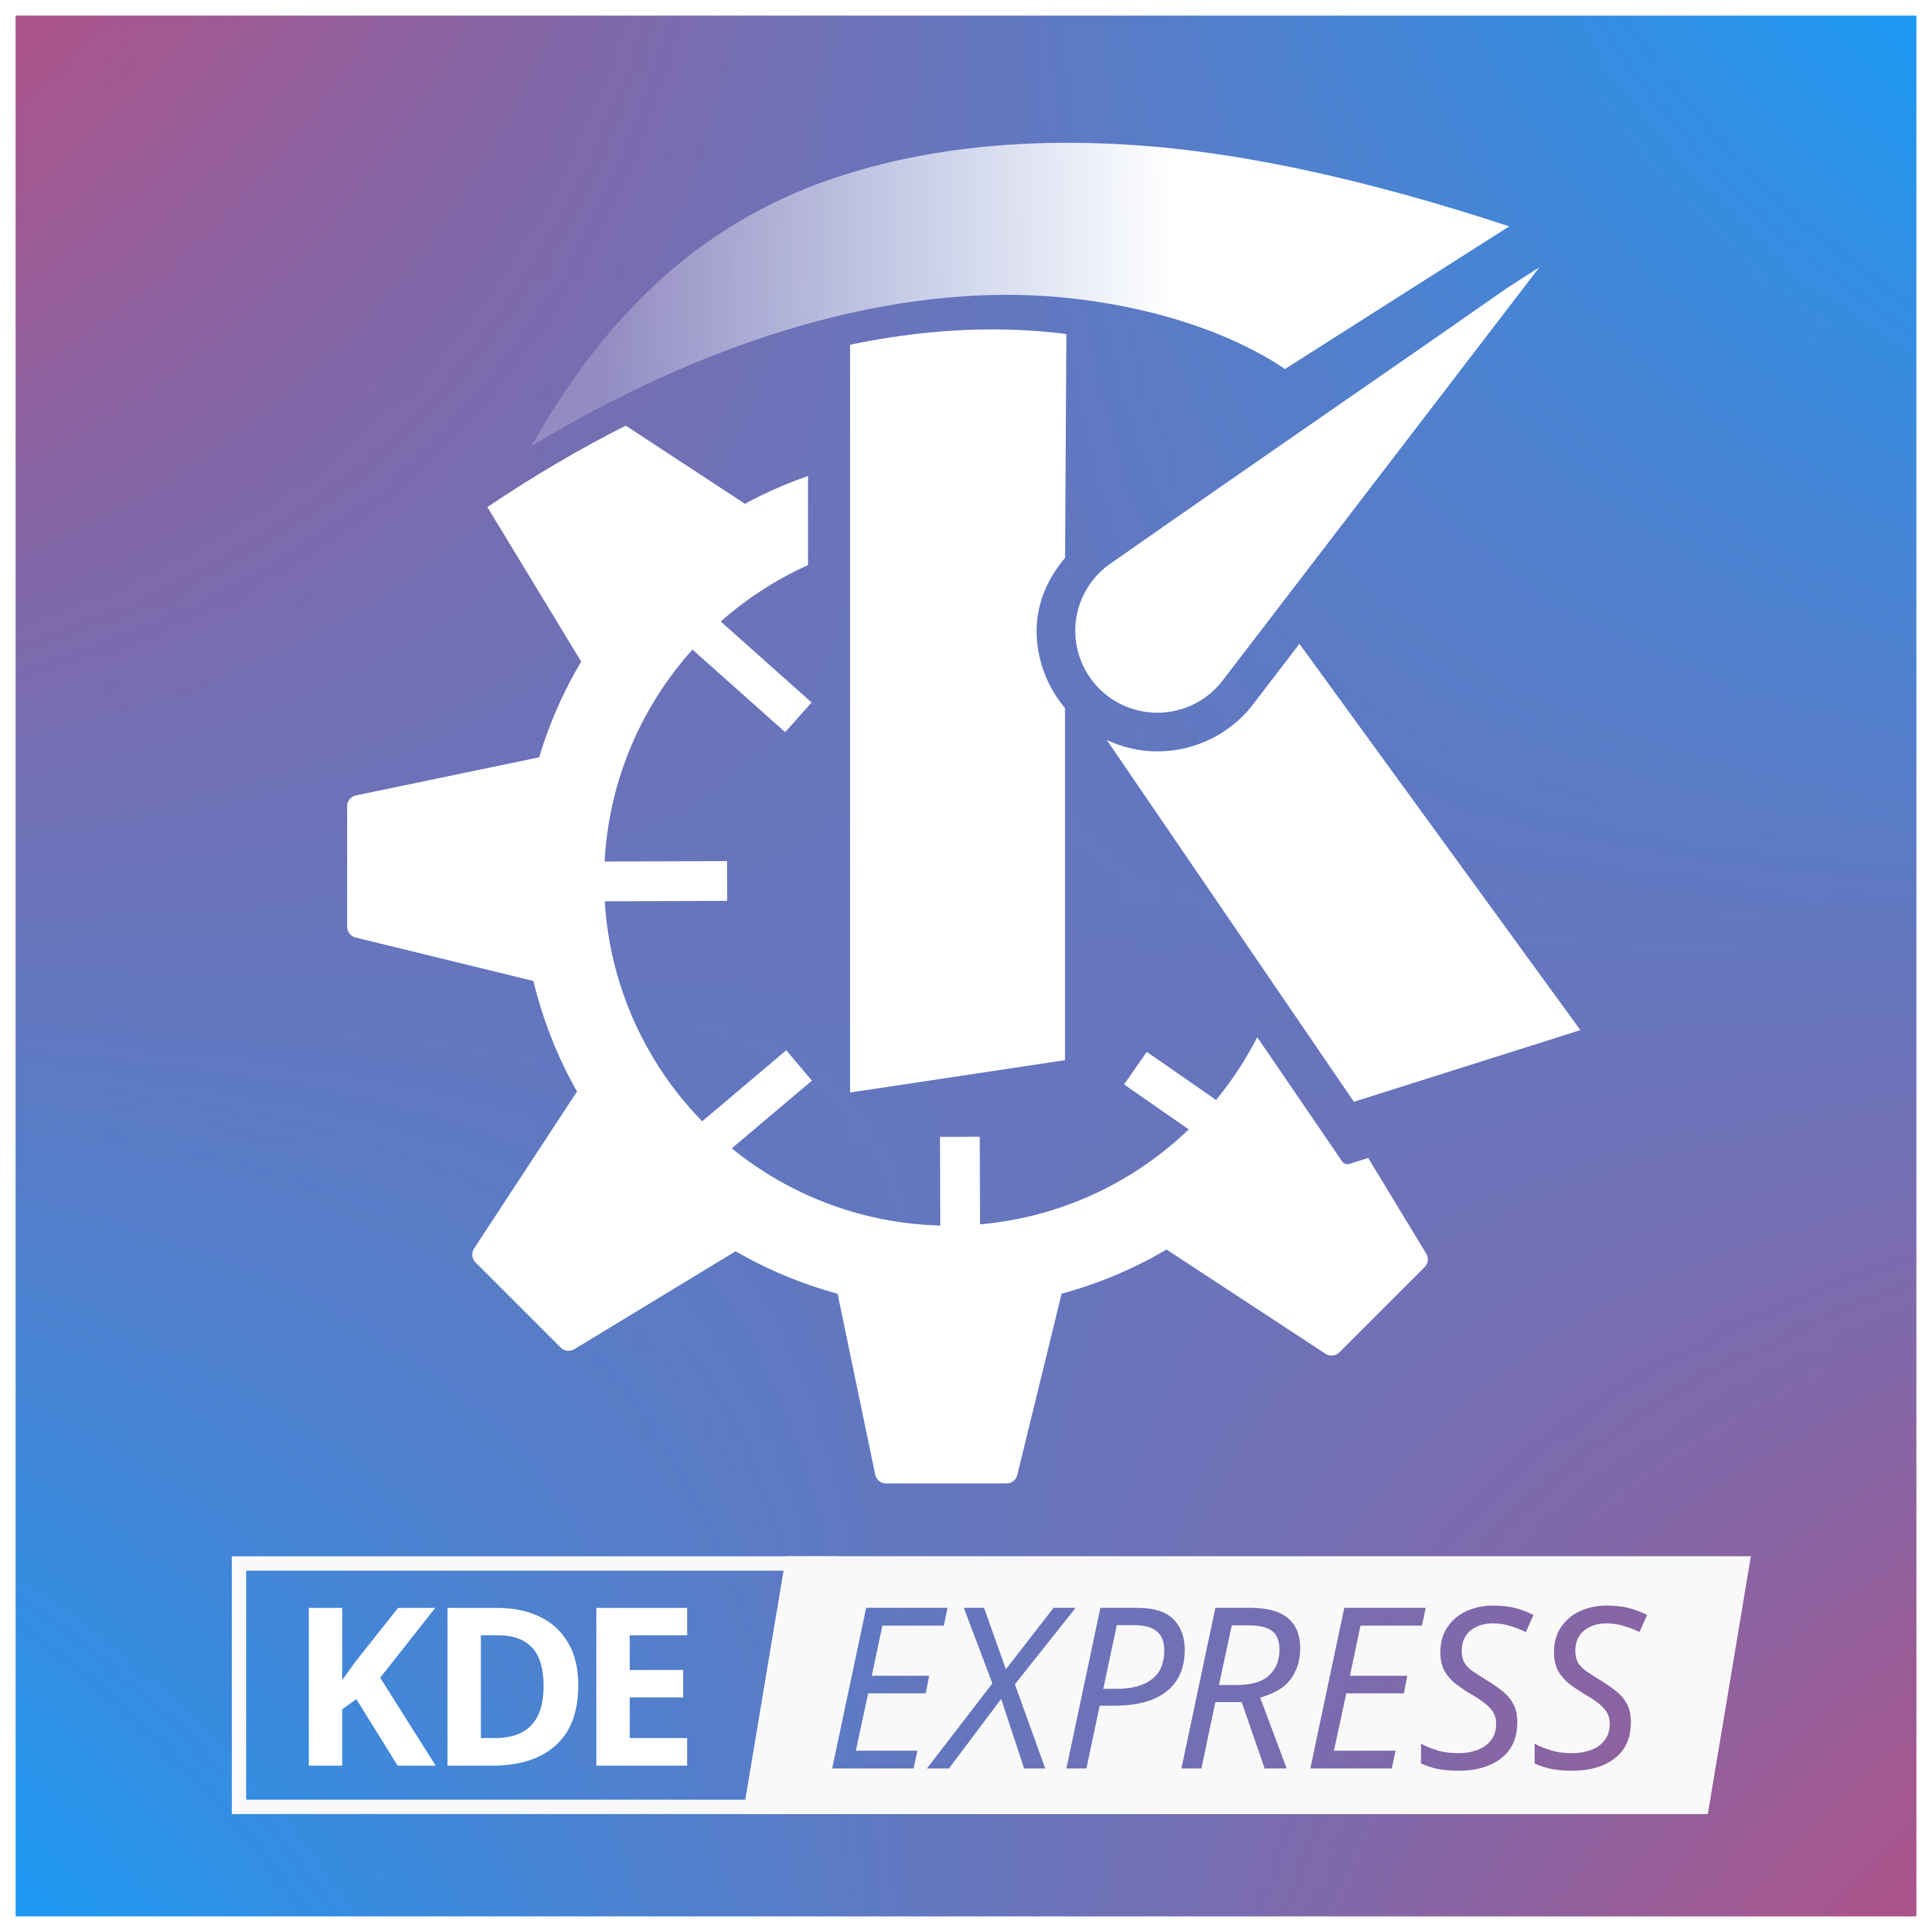 Logo del Podcast en el que aparece KDE EXPRESS sobre fondo azul y morado, con una K dentro de una rueda dentada y encima una flecha dando sensación de movimiento